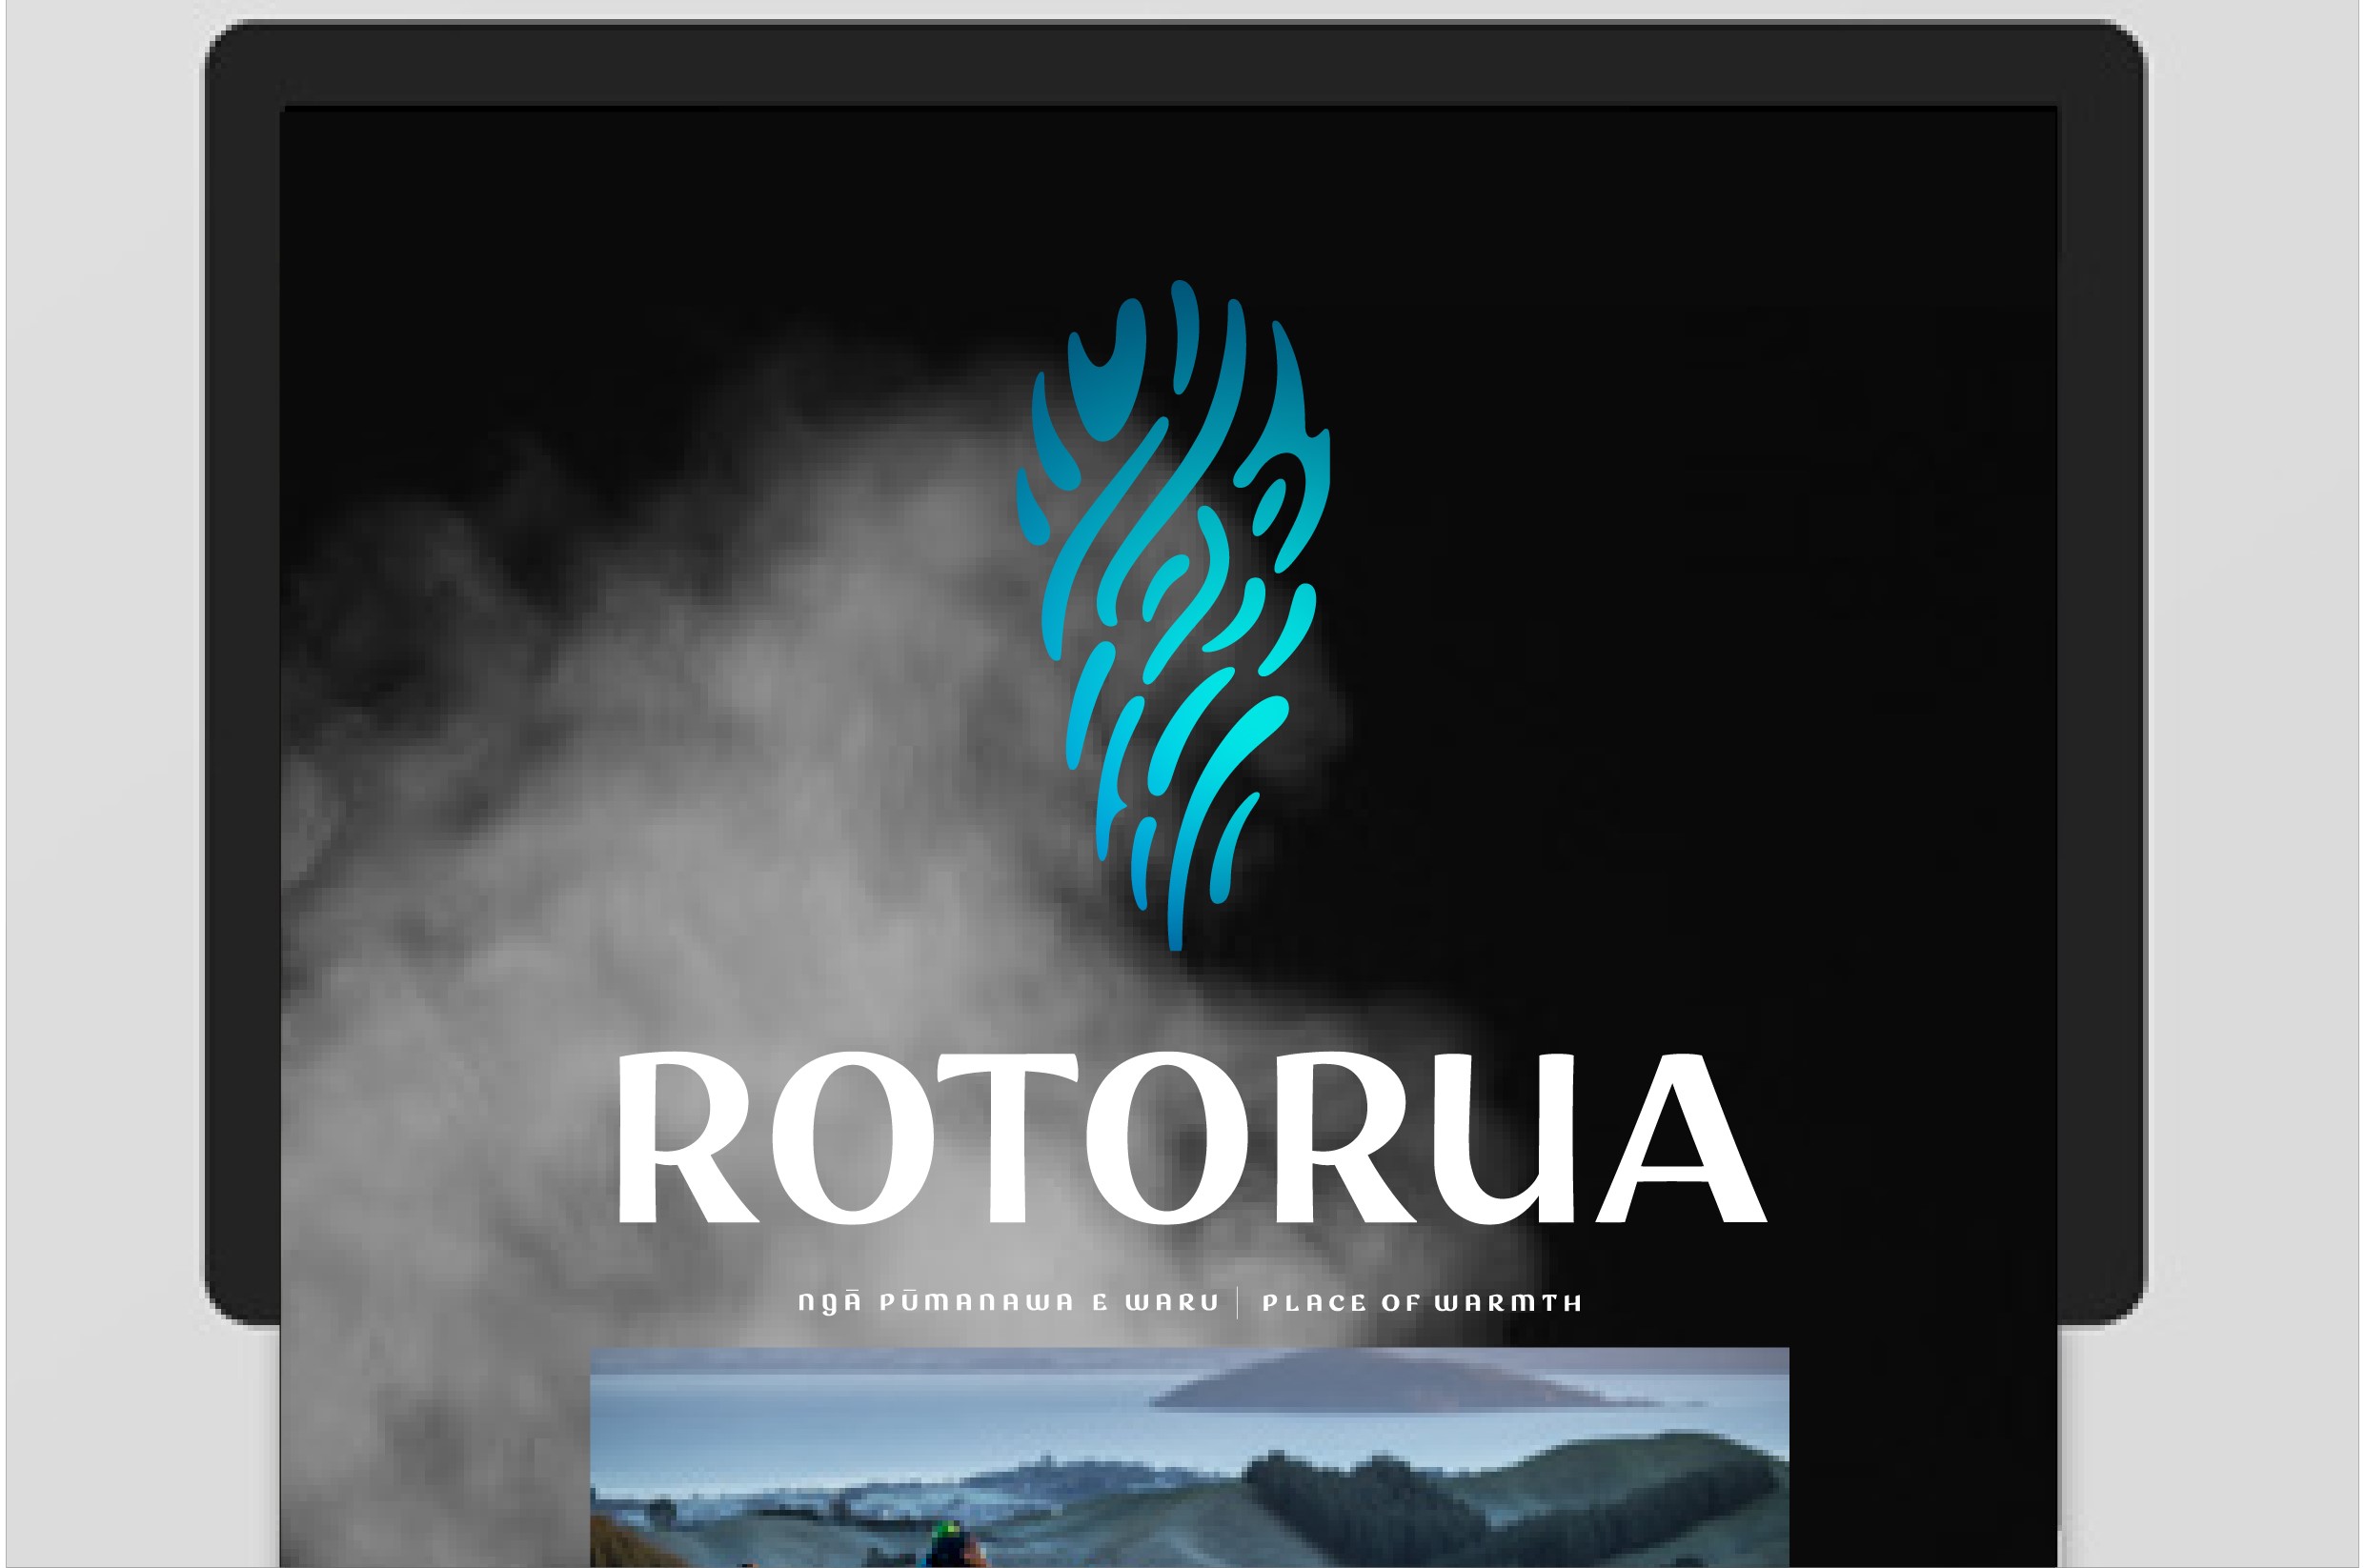 A new visual identity for Rotorua